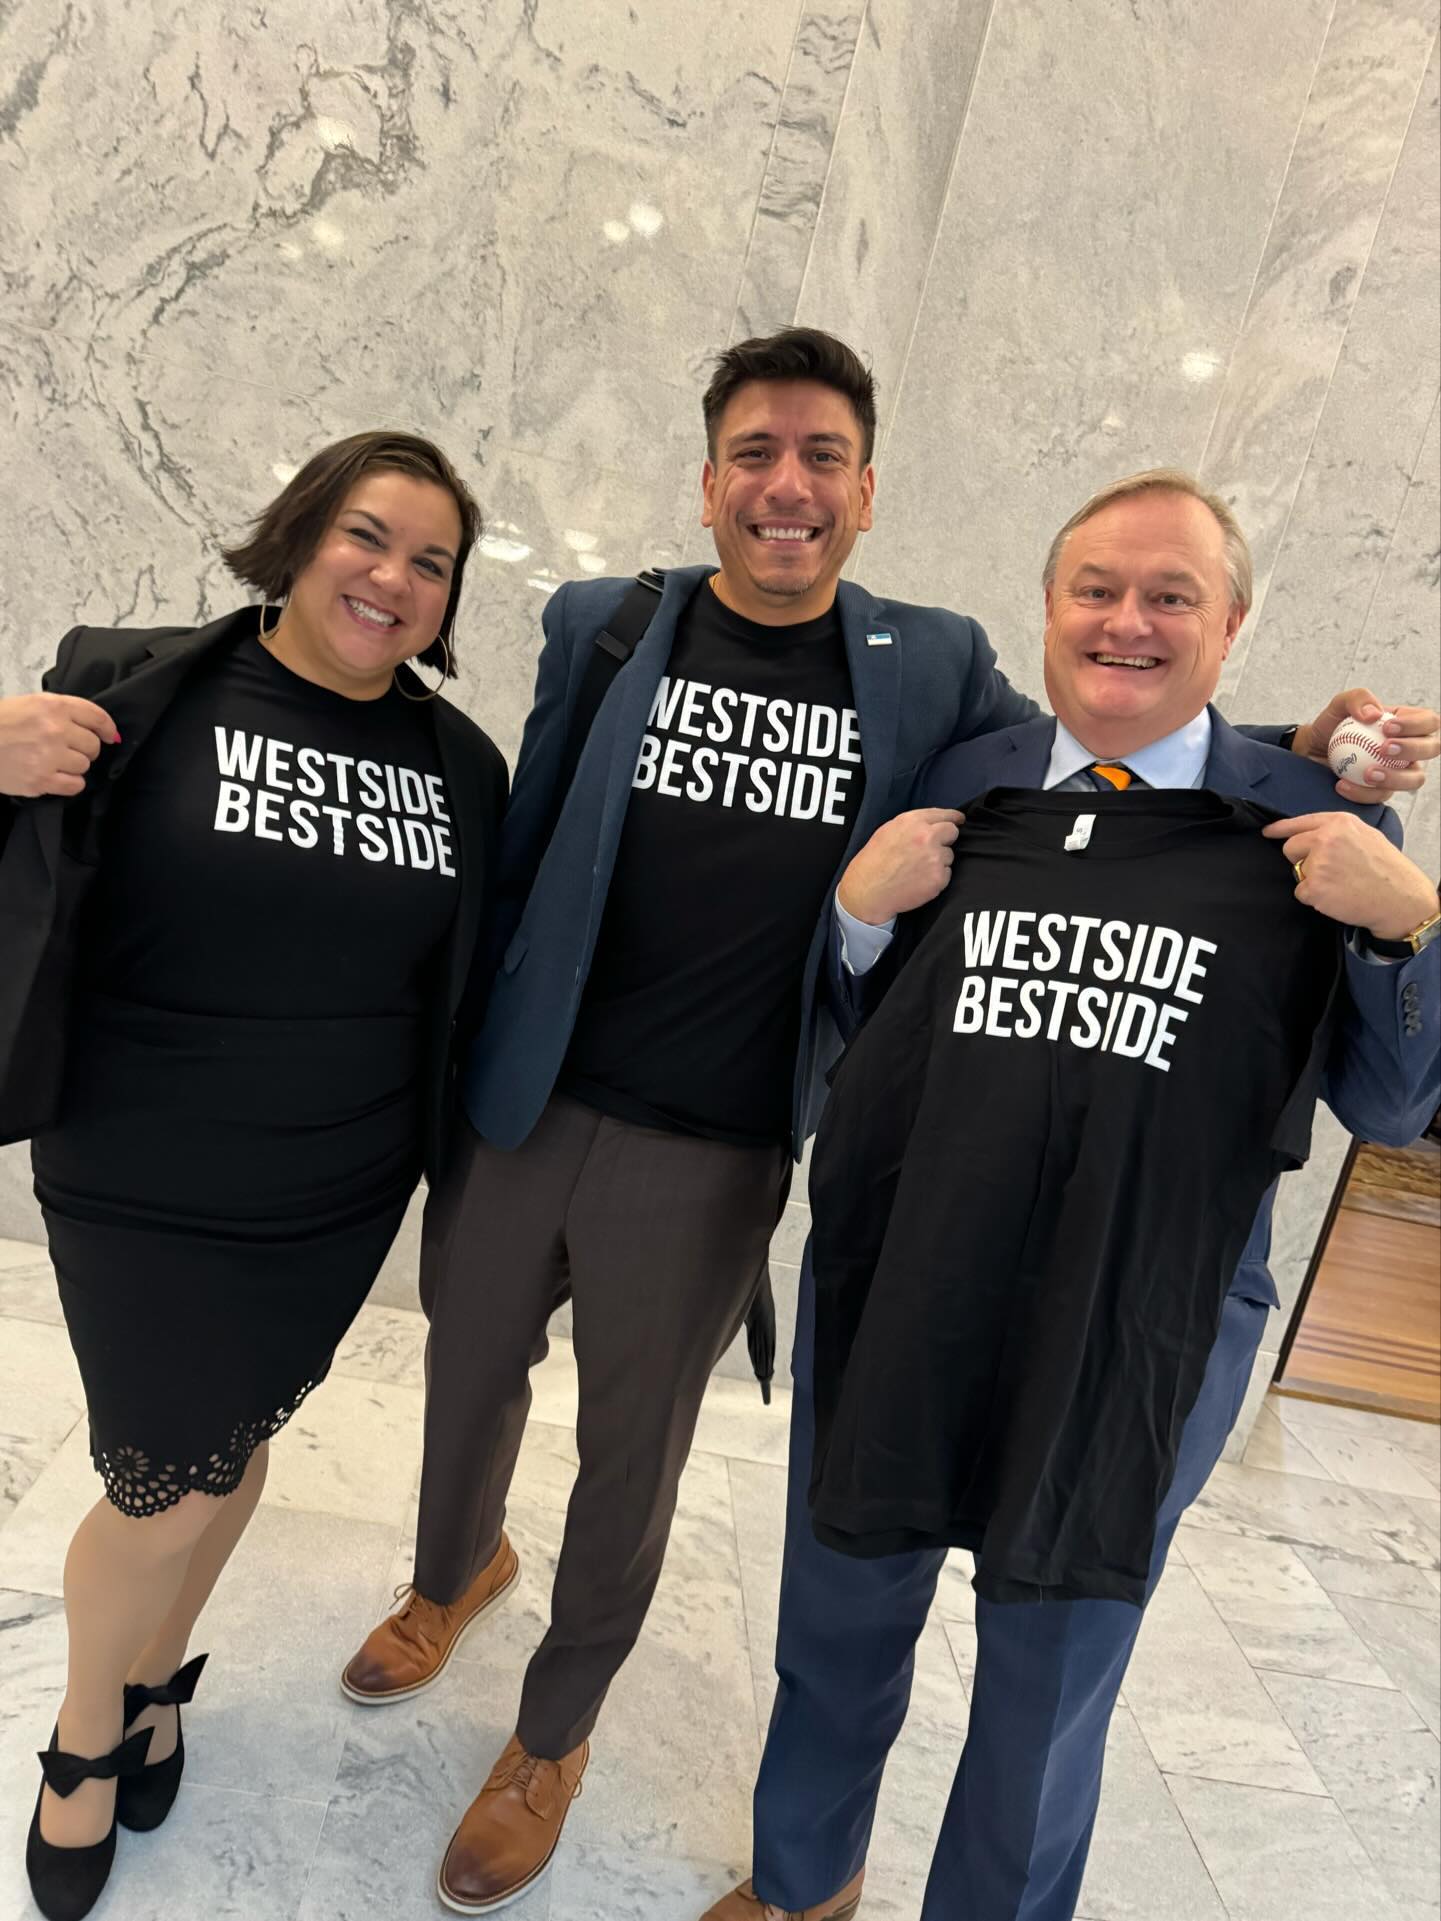 Westside Bestside T-shirts